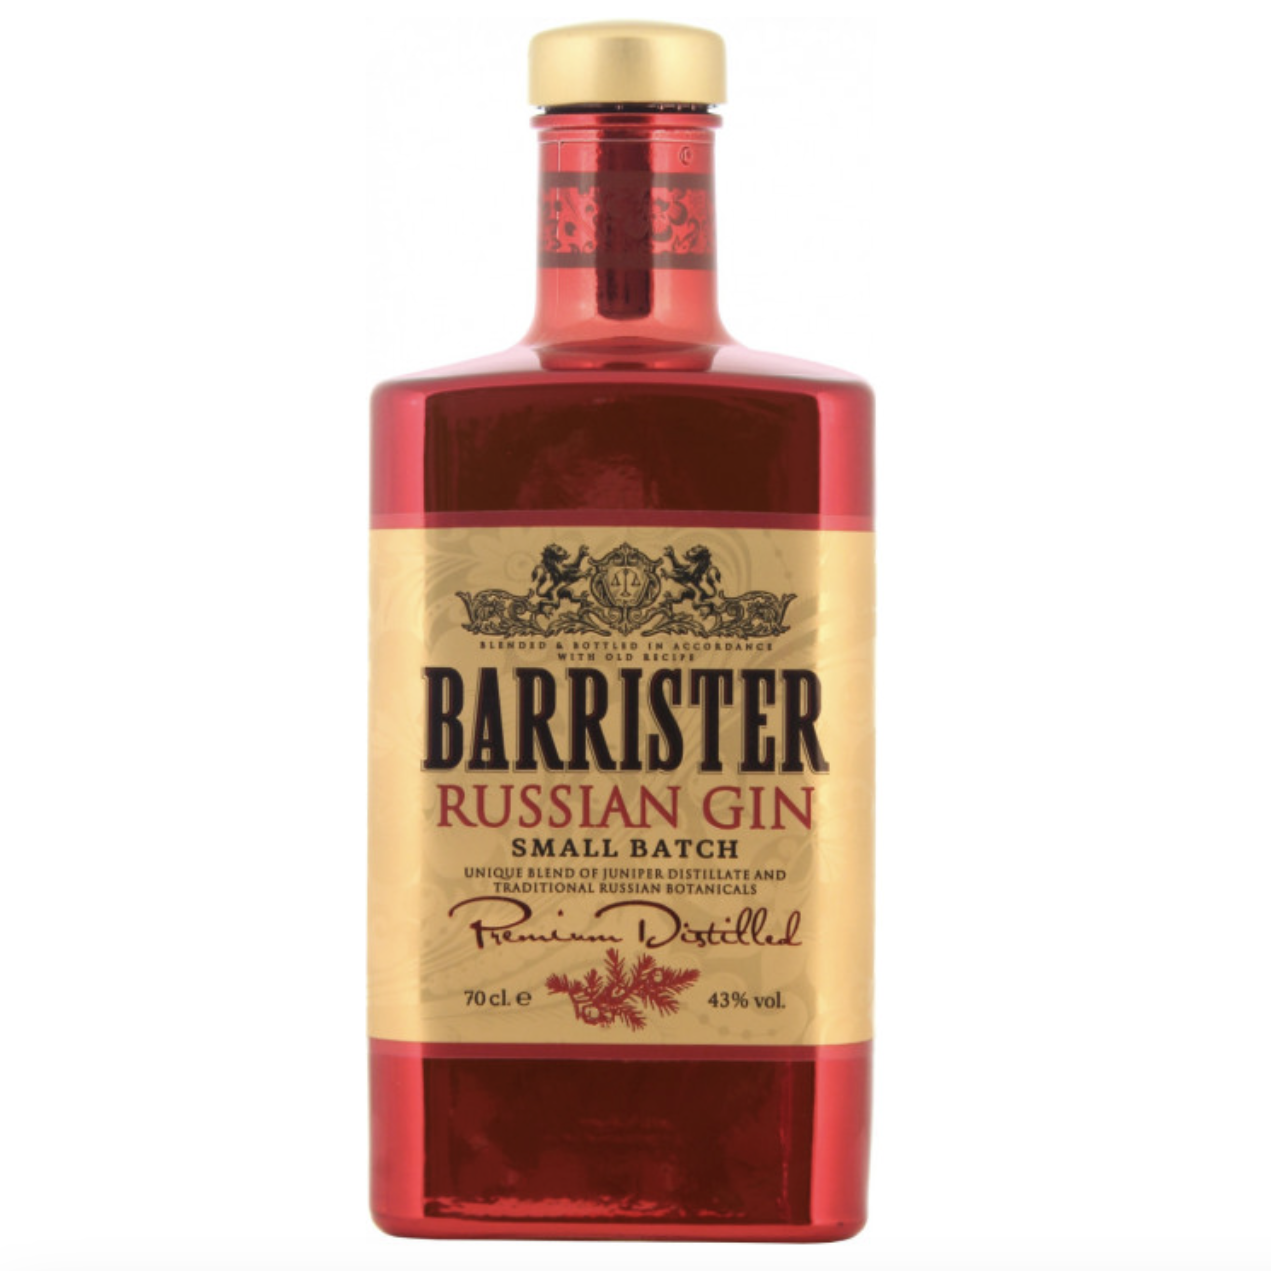 Barrister gin. 0.7Л Джин Барристер рашен 43%. "Барристер" Рашн Джин, 0.7 л. Джин Barrister Russian Gin. Джин Barrister Dry Gin, 0.7 л.